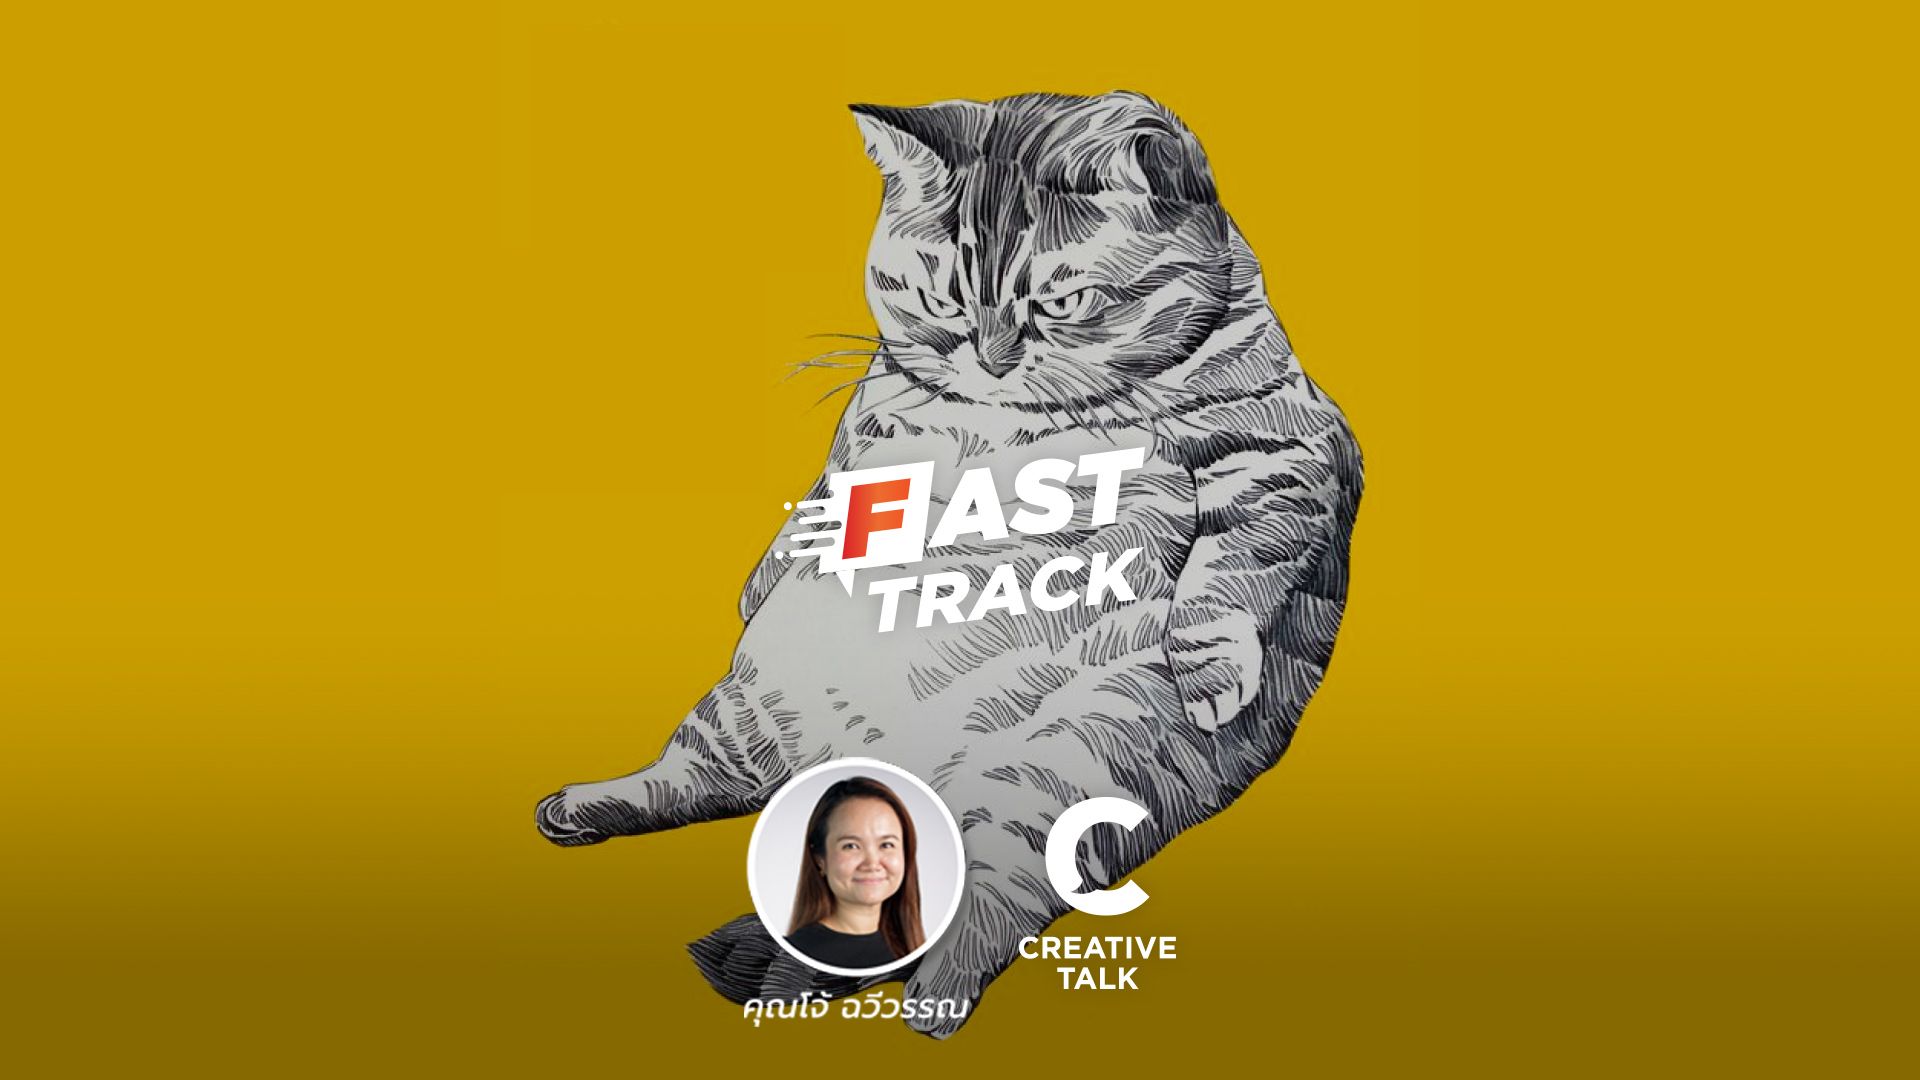 Fast Track EP.78 - เรียนรู้ชีวิตจากไลฟ์โค้ชที่ชื่อ “แมว”